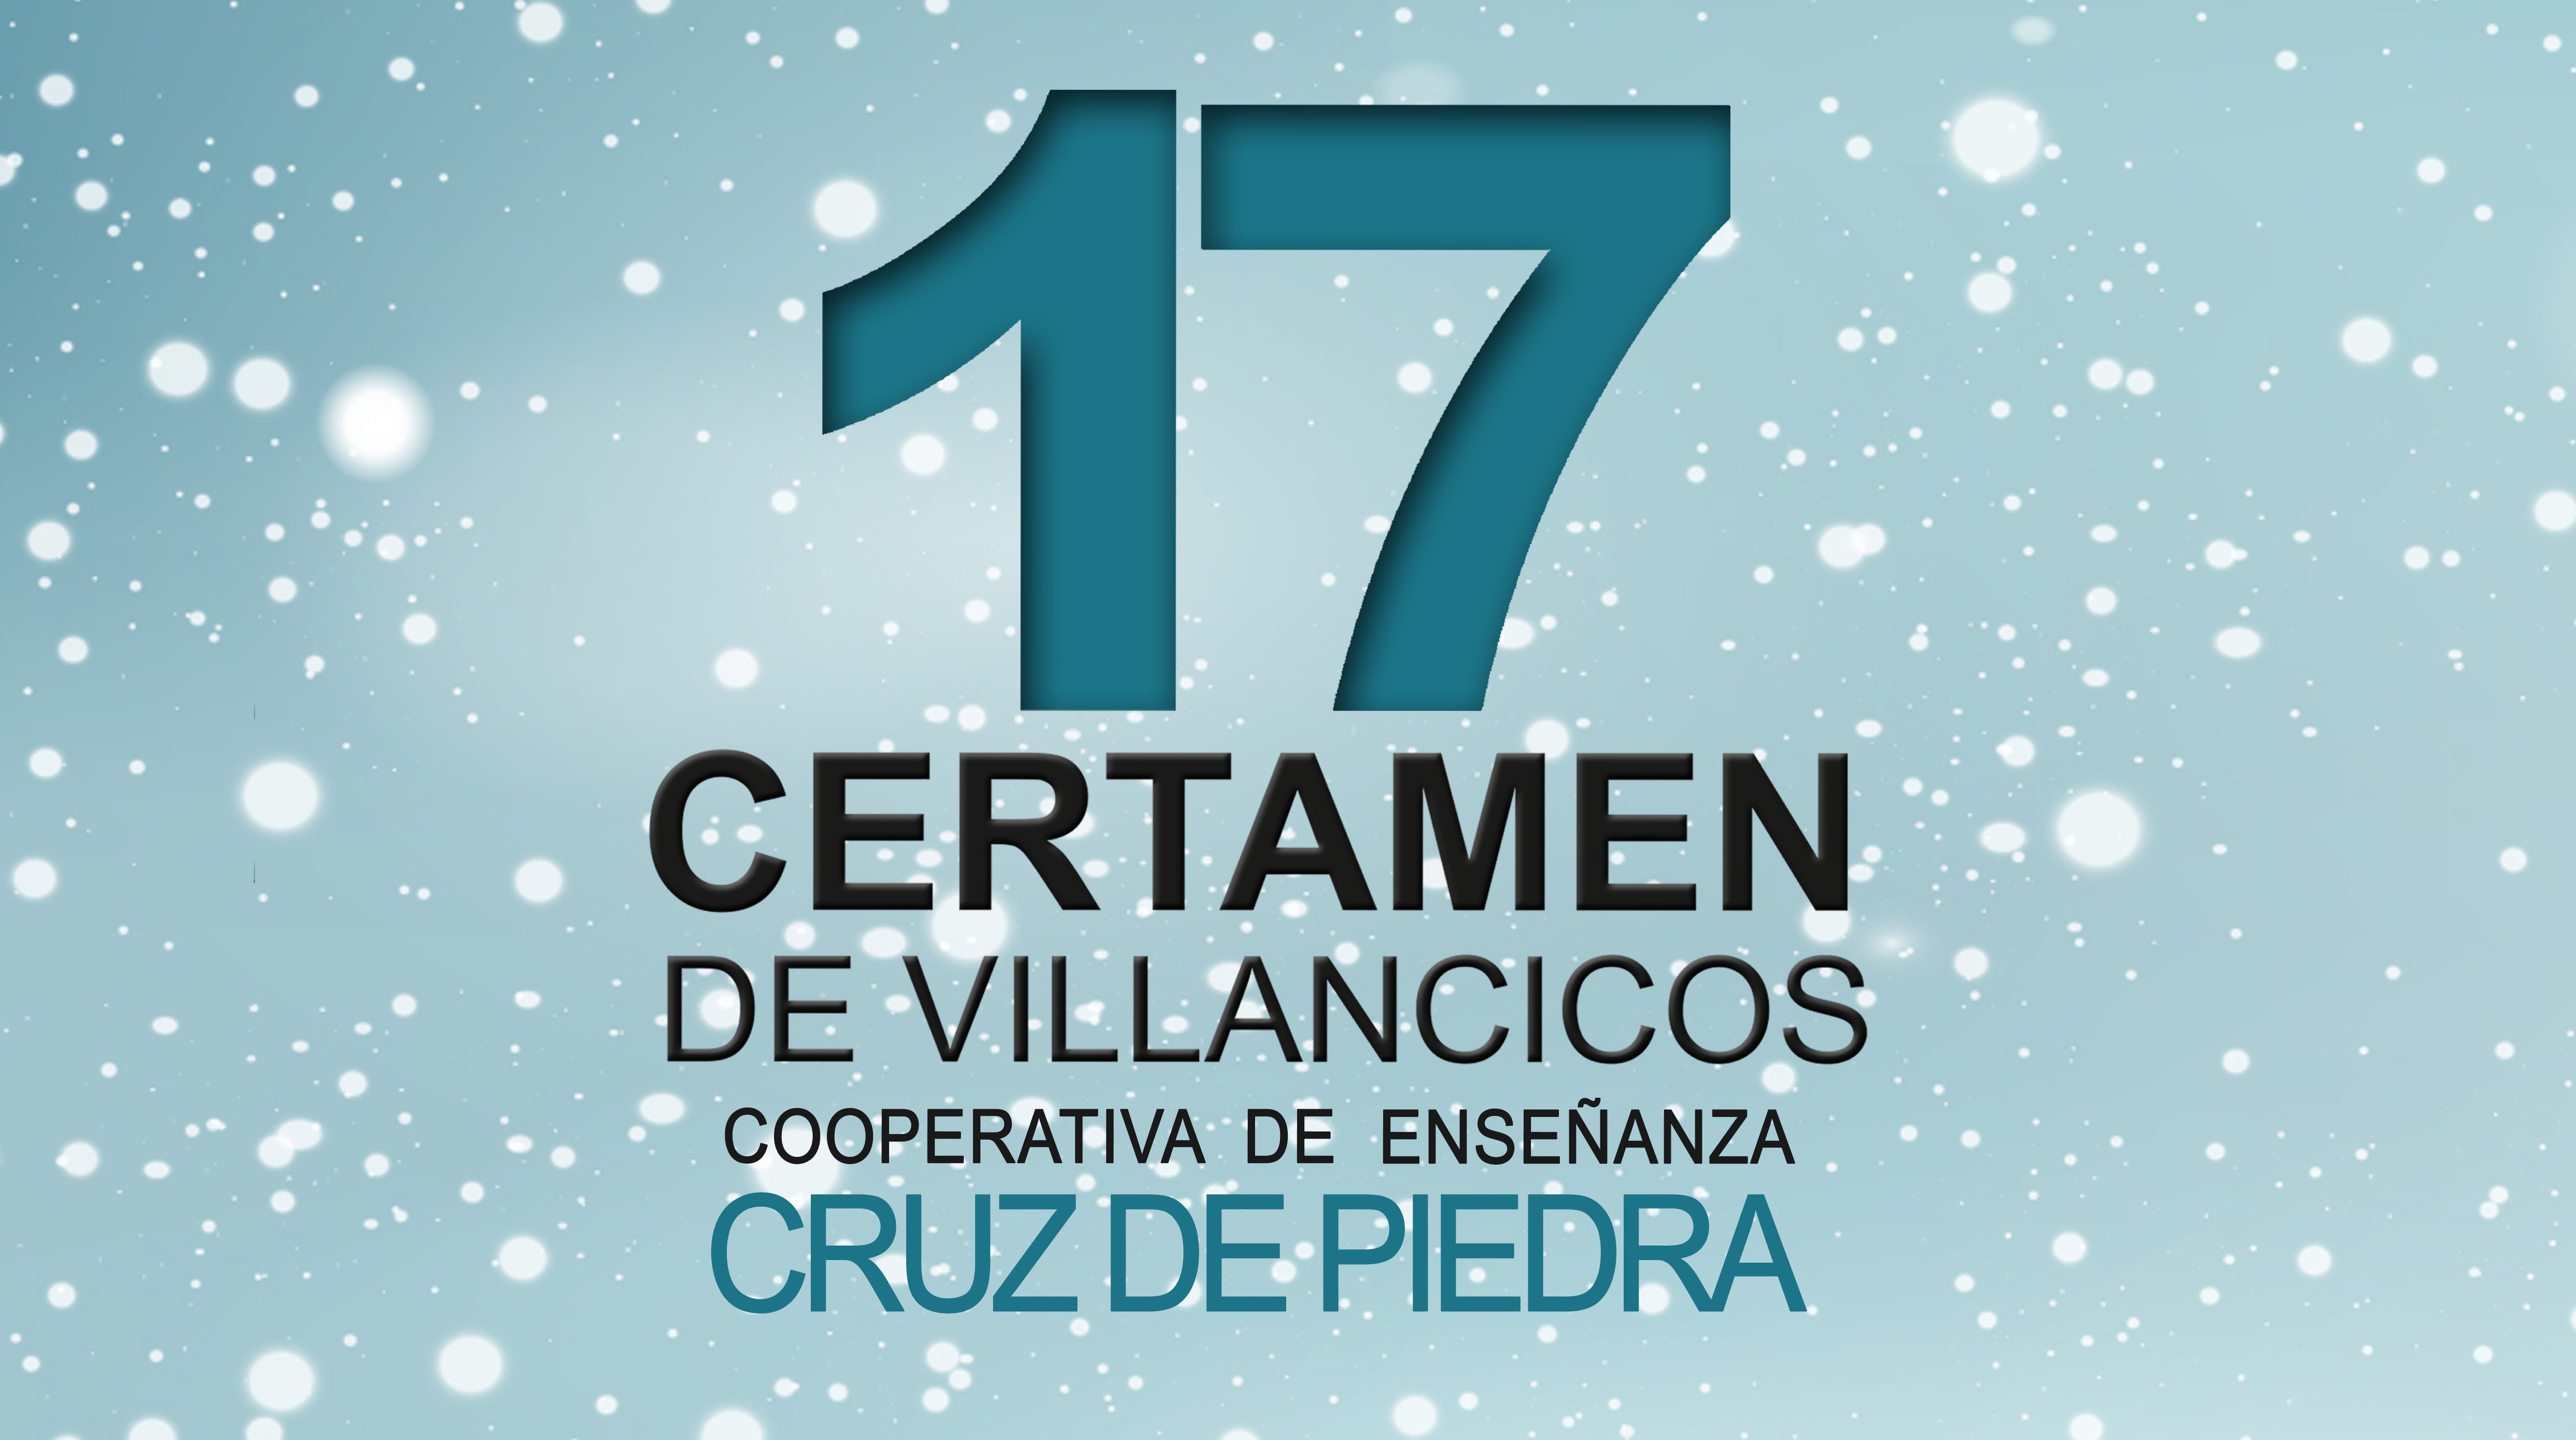 Mañana viernes, el Teatro Vico acoge la celebración del XVII Festival de Villancicos del colegio Cruz de Piedra